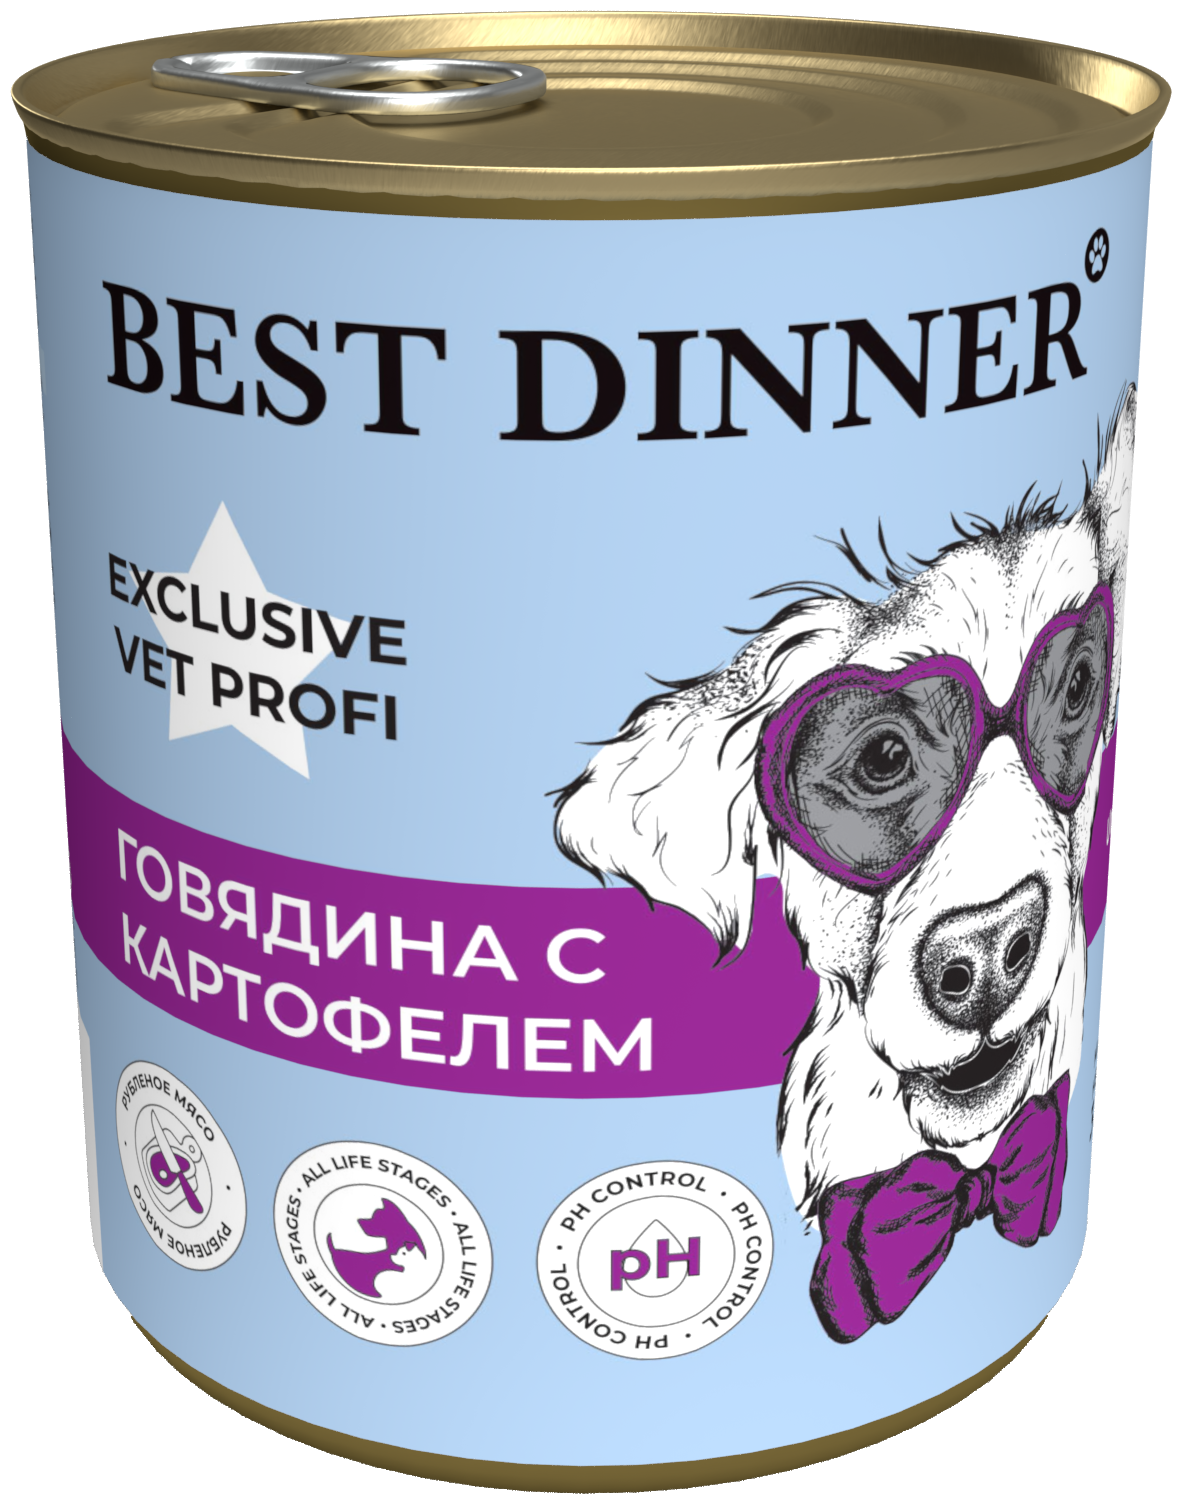 Консервы для собак Best Dinner Exclusive Vet Profi Urinary Говядина с картофелем 0,34 кг